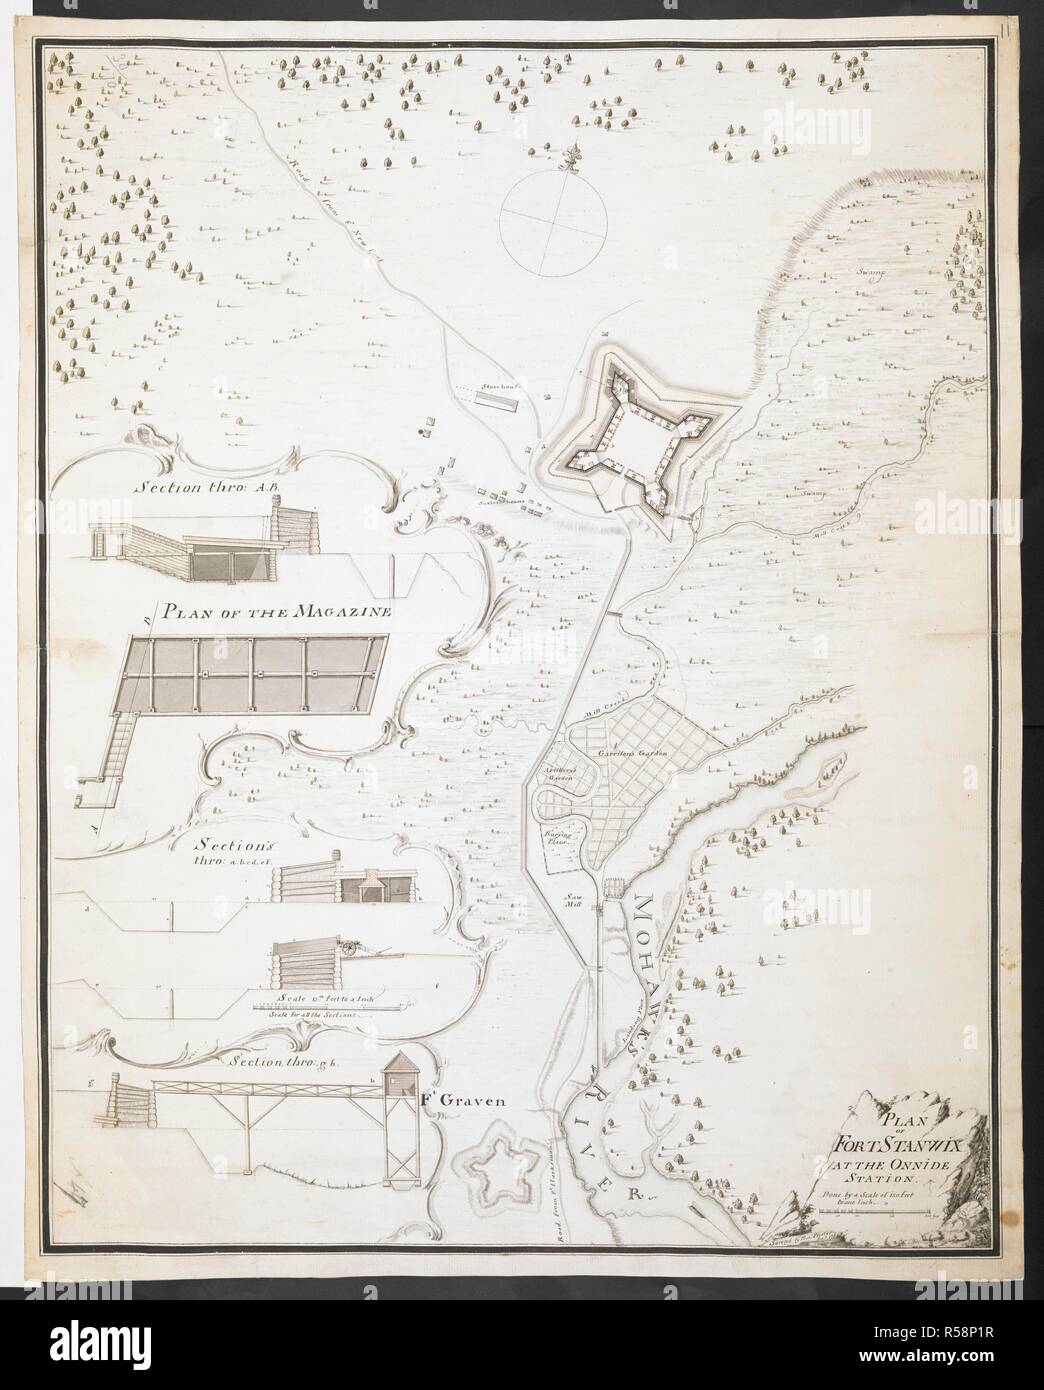 Plan von Fort Stanwix im Onnida Station', von 'Fran befragt. Pfister Ens. 1760.". R.U.S.I. Karten. Bd. LXXVI (1-13). 57711 (1-4). Orte in Nordosten von New York. 18. 1764. 1: 1800. 'Scale von 150 Meter zu einem Zoll". Skala von 300 Fuß (= 2 Zoll). Inset, Abschnitte von fort. 1: 180. 'Scale für alle Abschnitte 15 Fuß zu einem Zoll". Skala von 40 Fuß (= 2 Zoll). 560 x 445 mm. Quelle: Hinzufügen. 57711.11 Amherst. Ein 47. R.U.S.I. Nr. Ein 30,70. Stockfoto